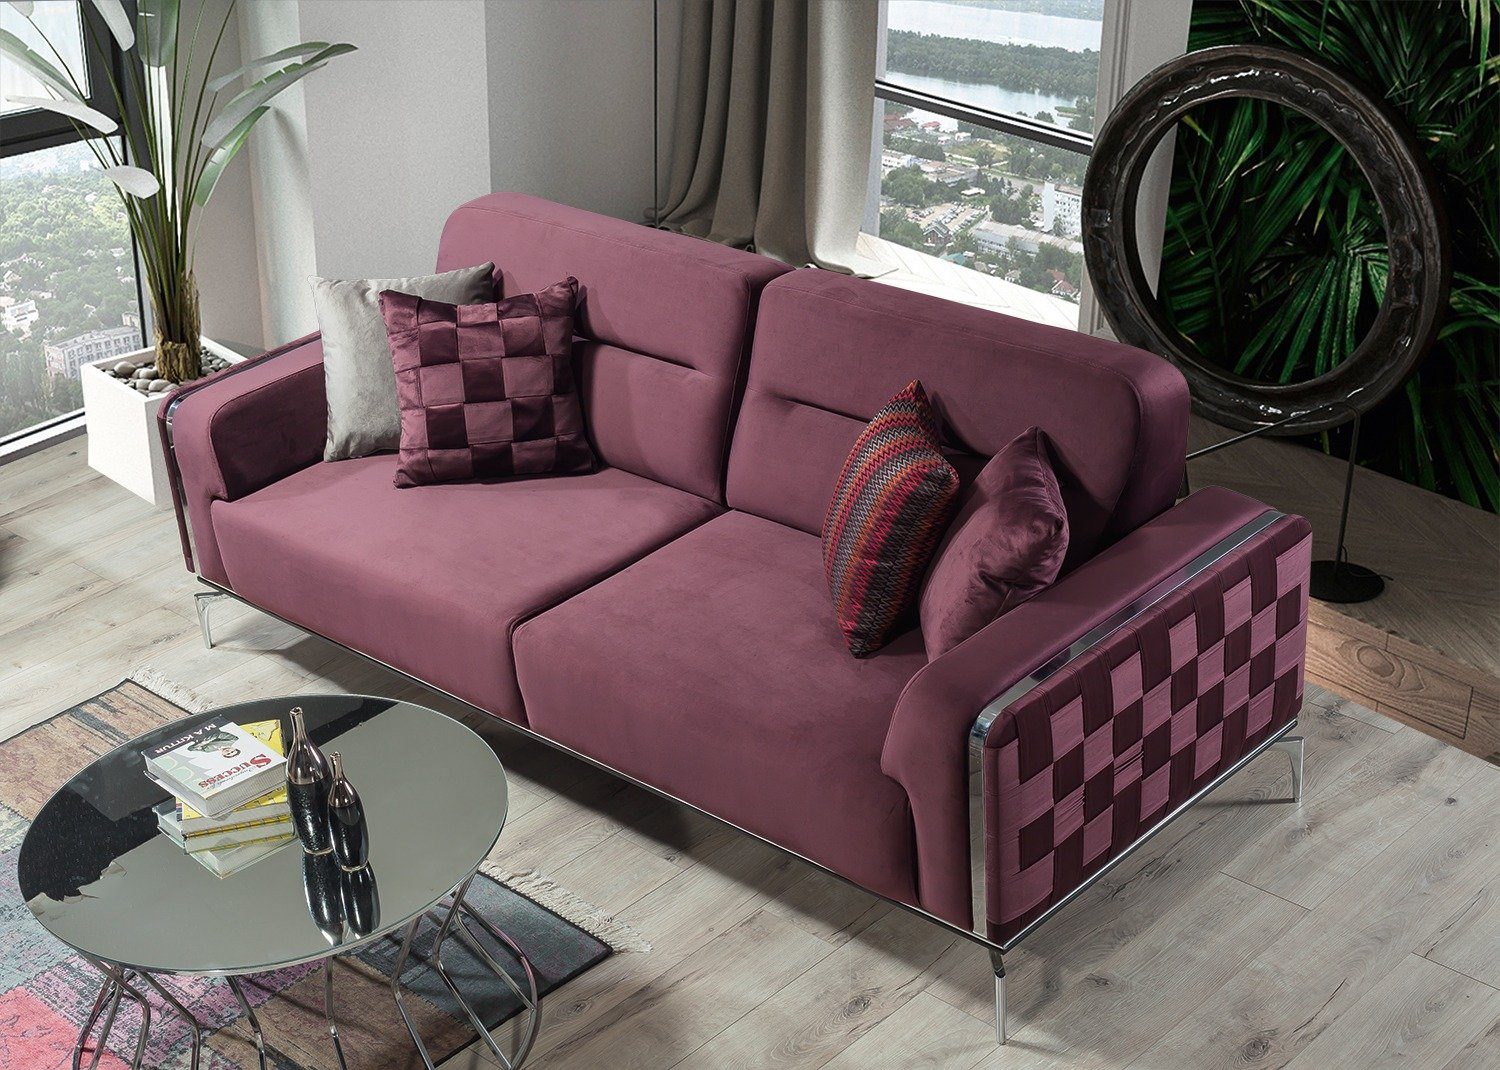 Villa Möbel Sofa Turkey, Stk. pflegeleichter 1 Mikrofaserstoff, in Metallfüße Quality Violett Check, Made 2-Sitzer